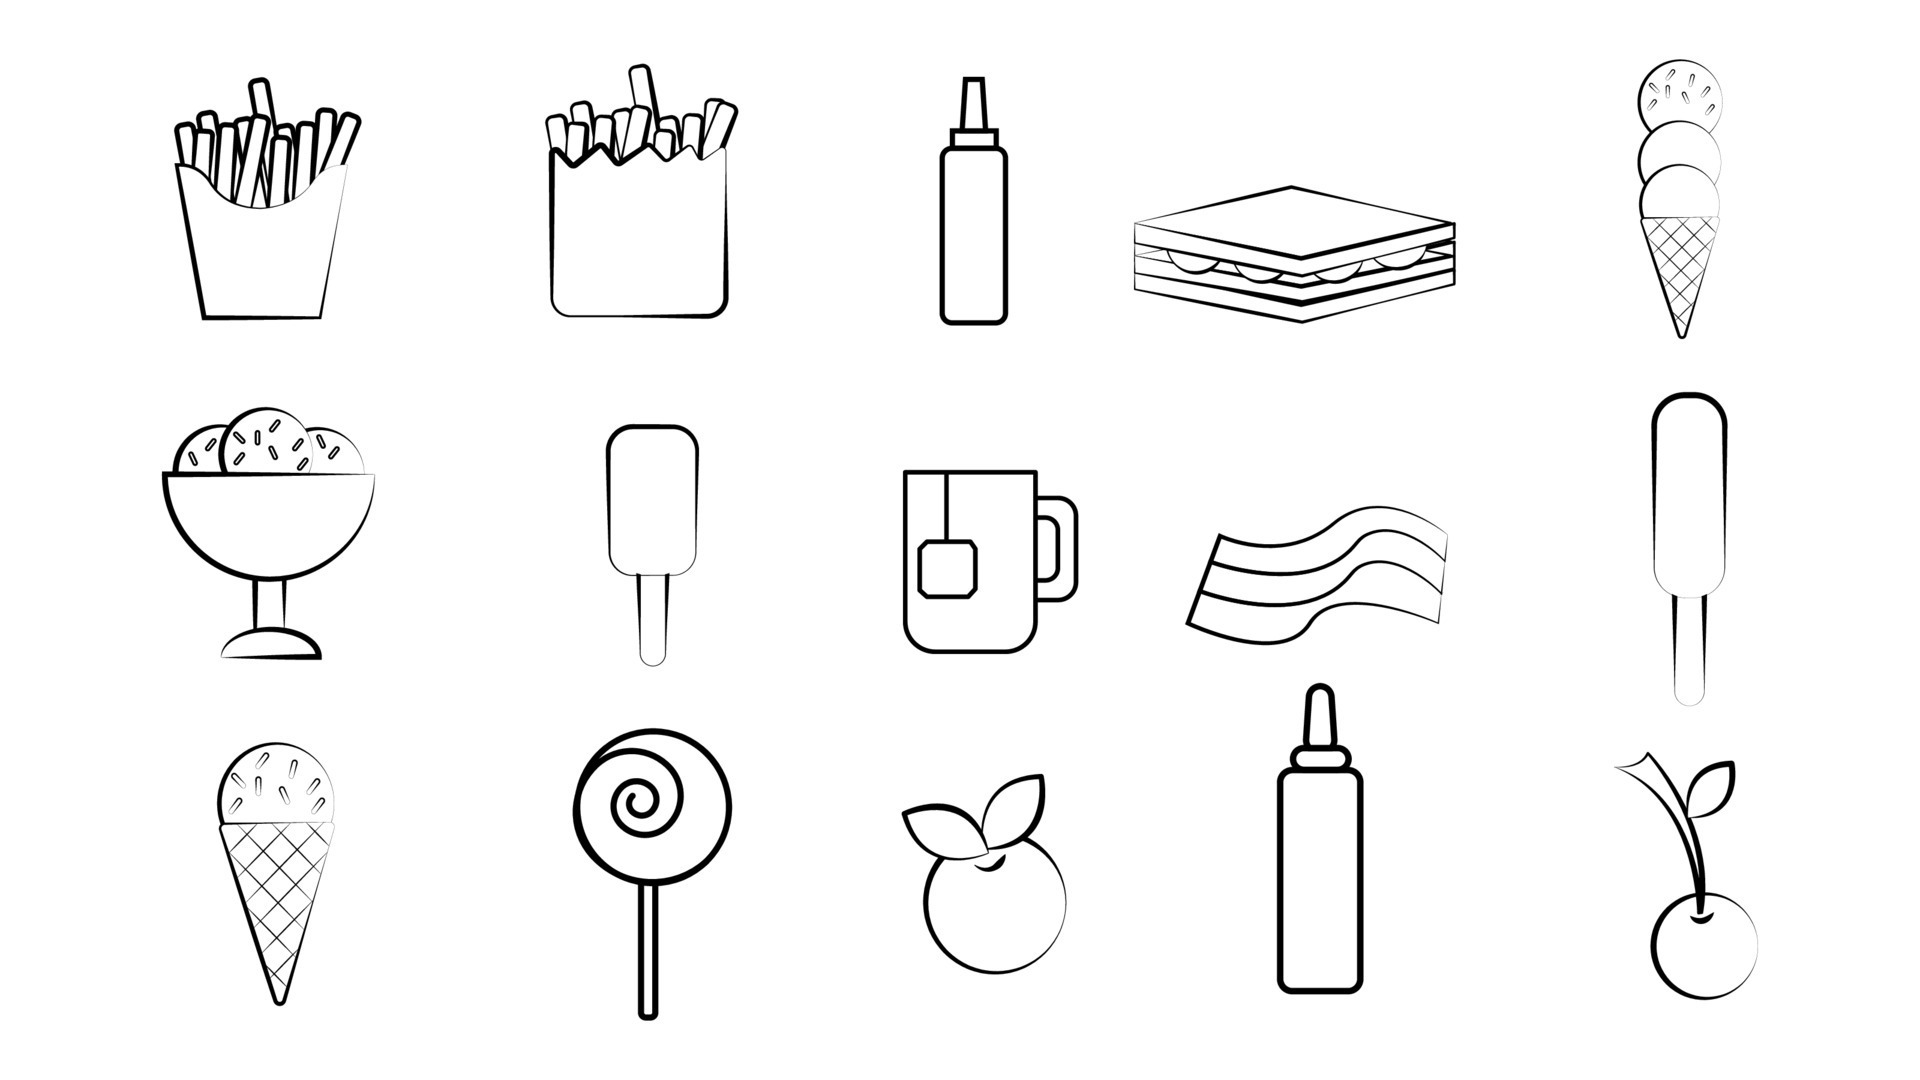 Jogo de chá - ícones de comida e restaurante grátis